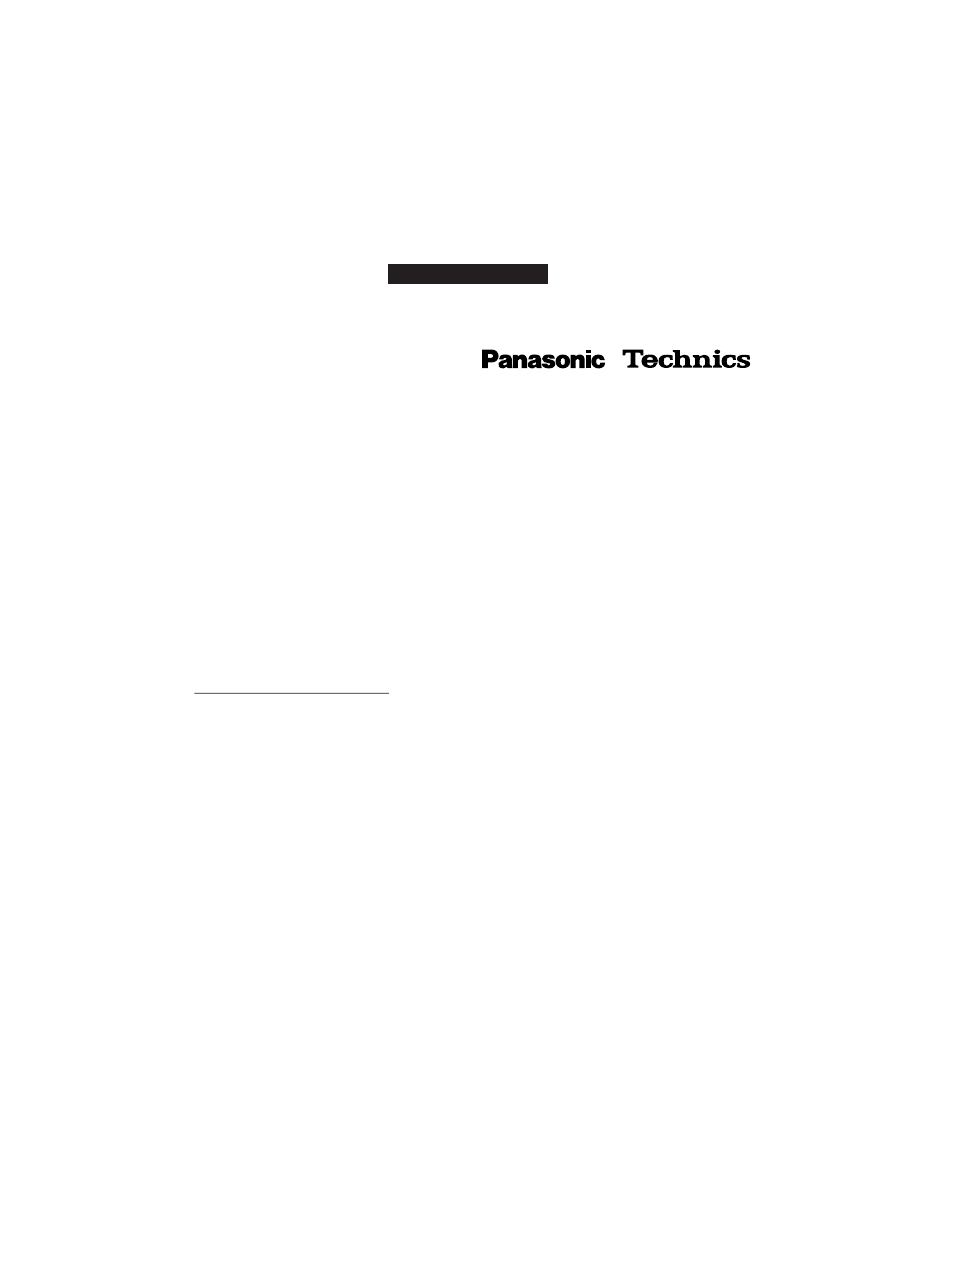 Certificat de garantie de, Accessoires audio | Panasonic RP-SP1000 Manuel d'utilisation | Page 8 / 8